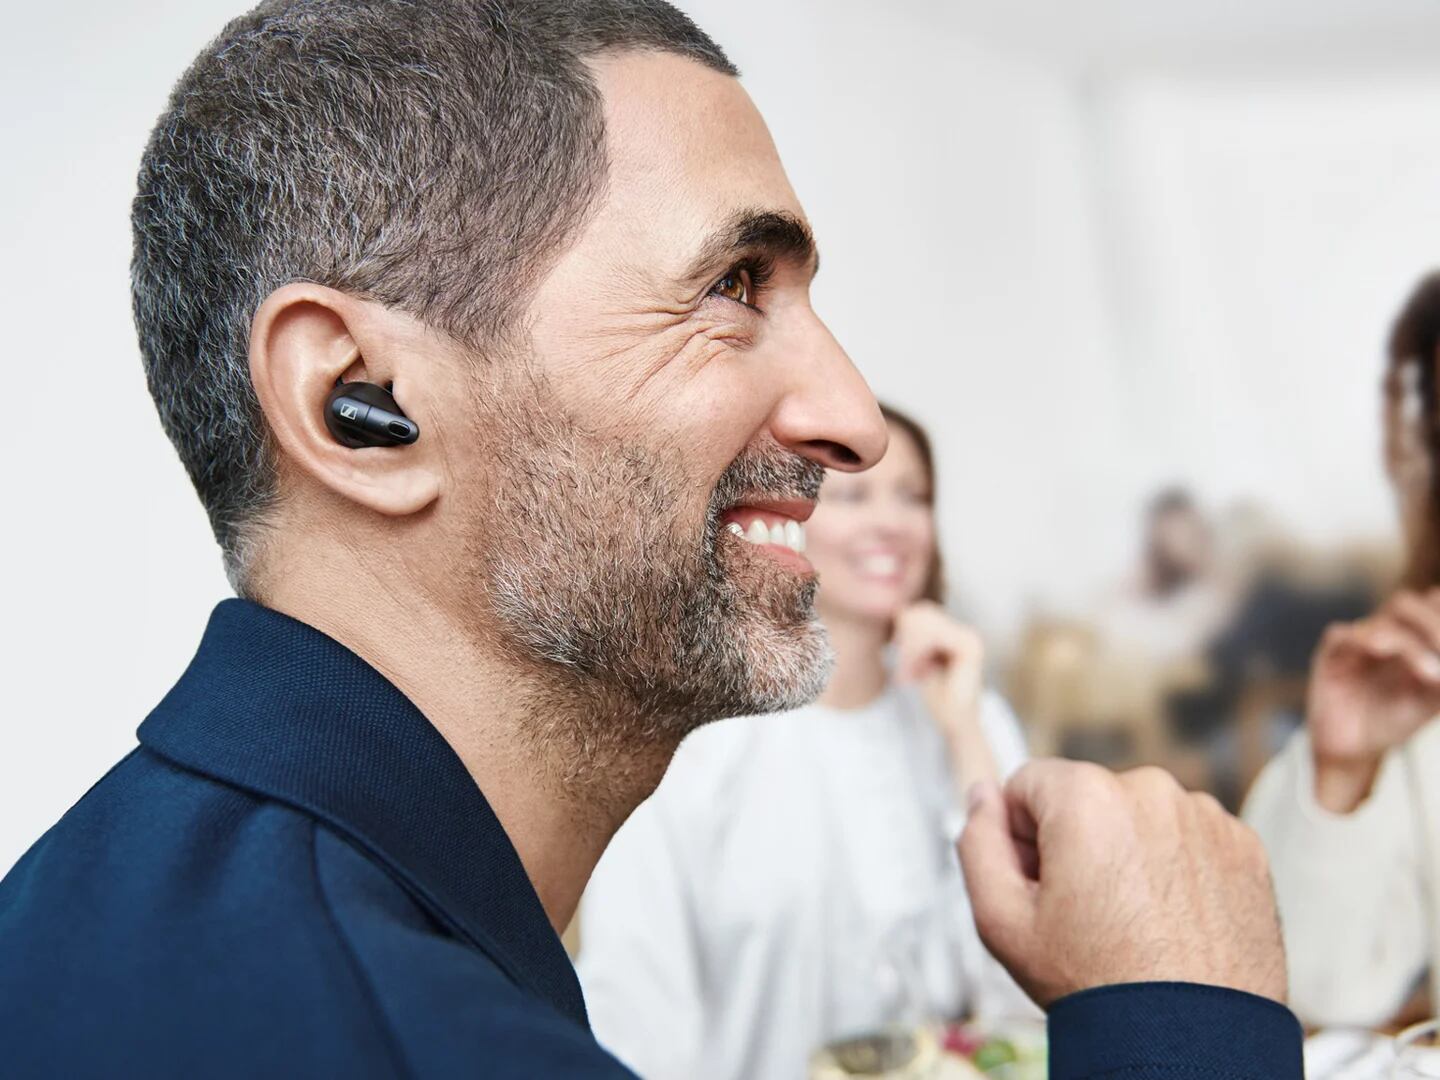 Los científicos advierten sobre los audífonos baratos - Siete Días